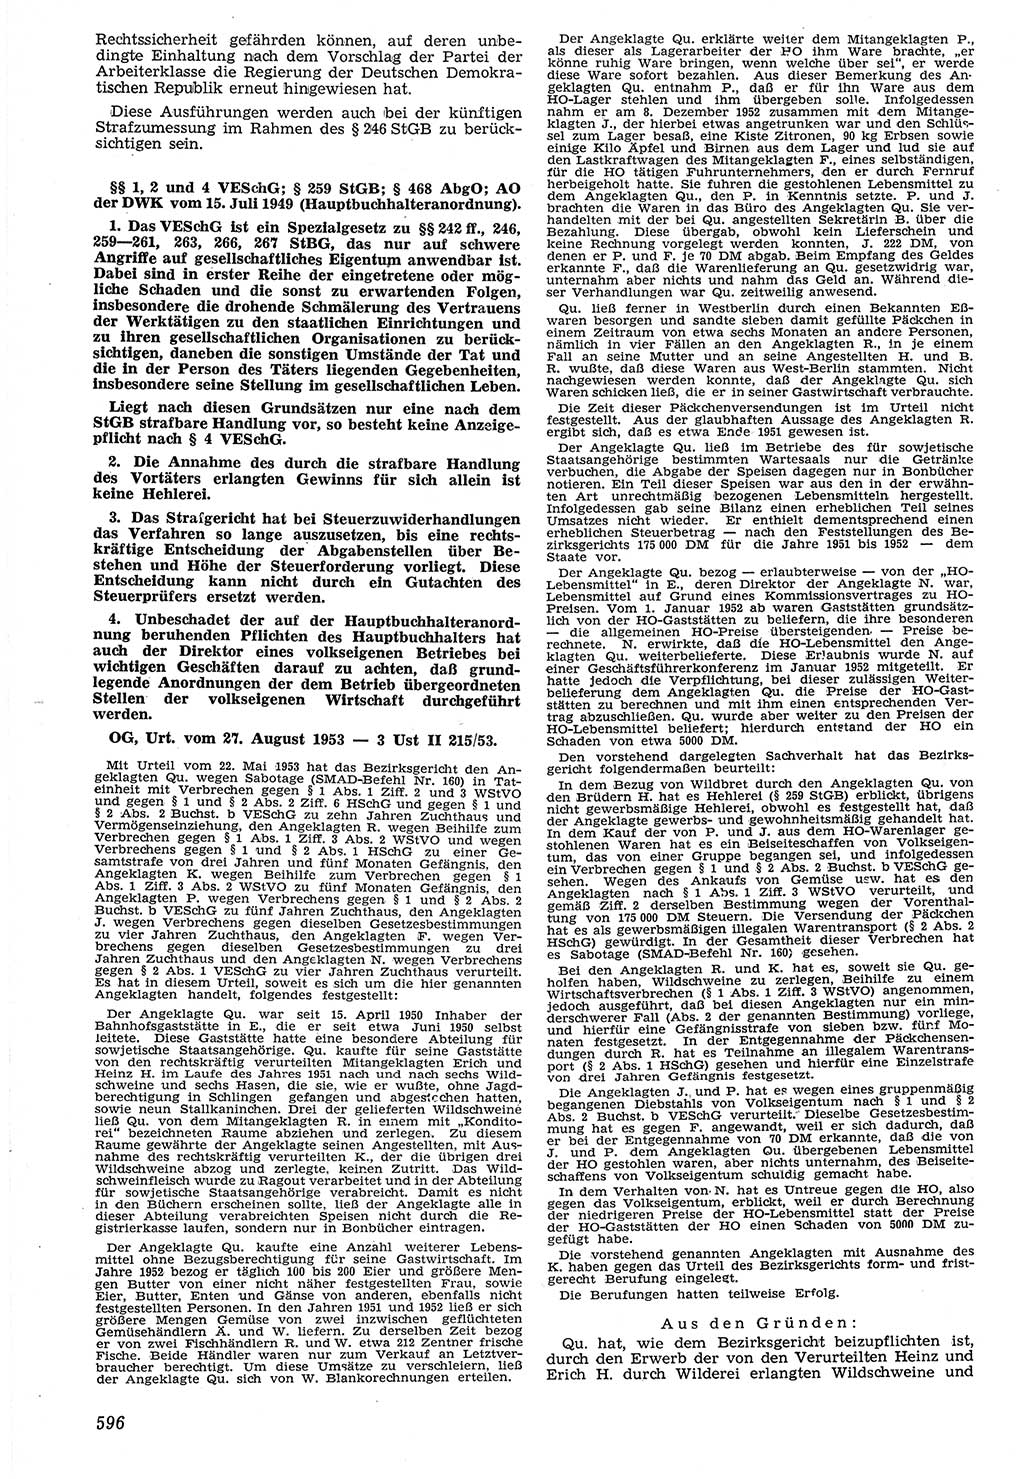 Neue Justiz (NJ), Zeitschrift für Recht und Rechtswissenschaft [Deutsche Demokratische Republik (DDR)], 7. Jahrgang 1953, Seite 596 (NJ DDR 1953, S. 596)